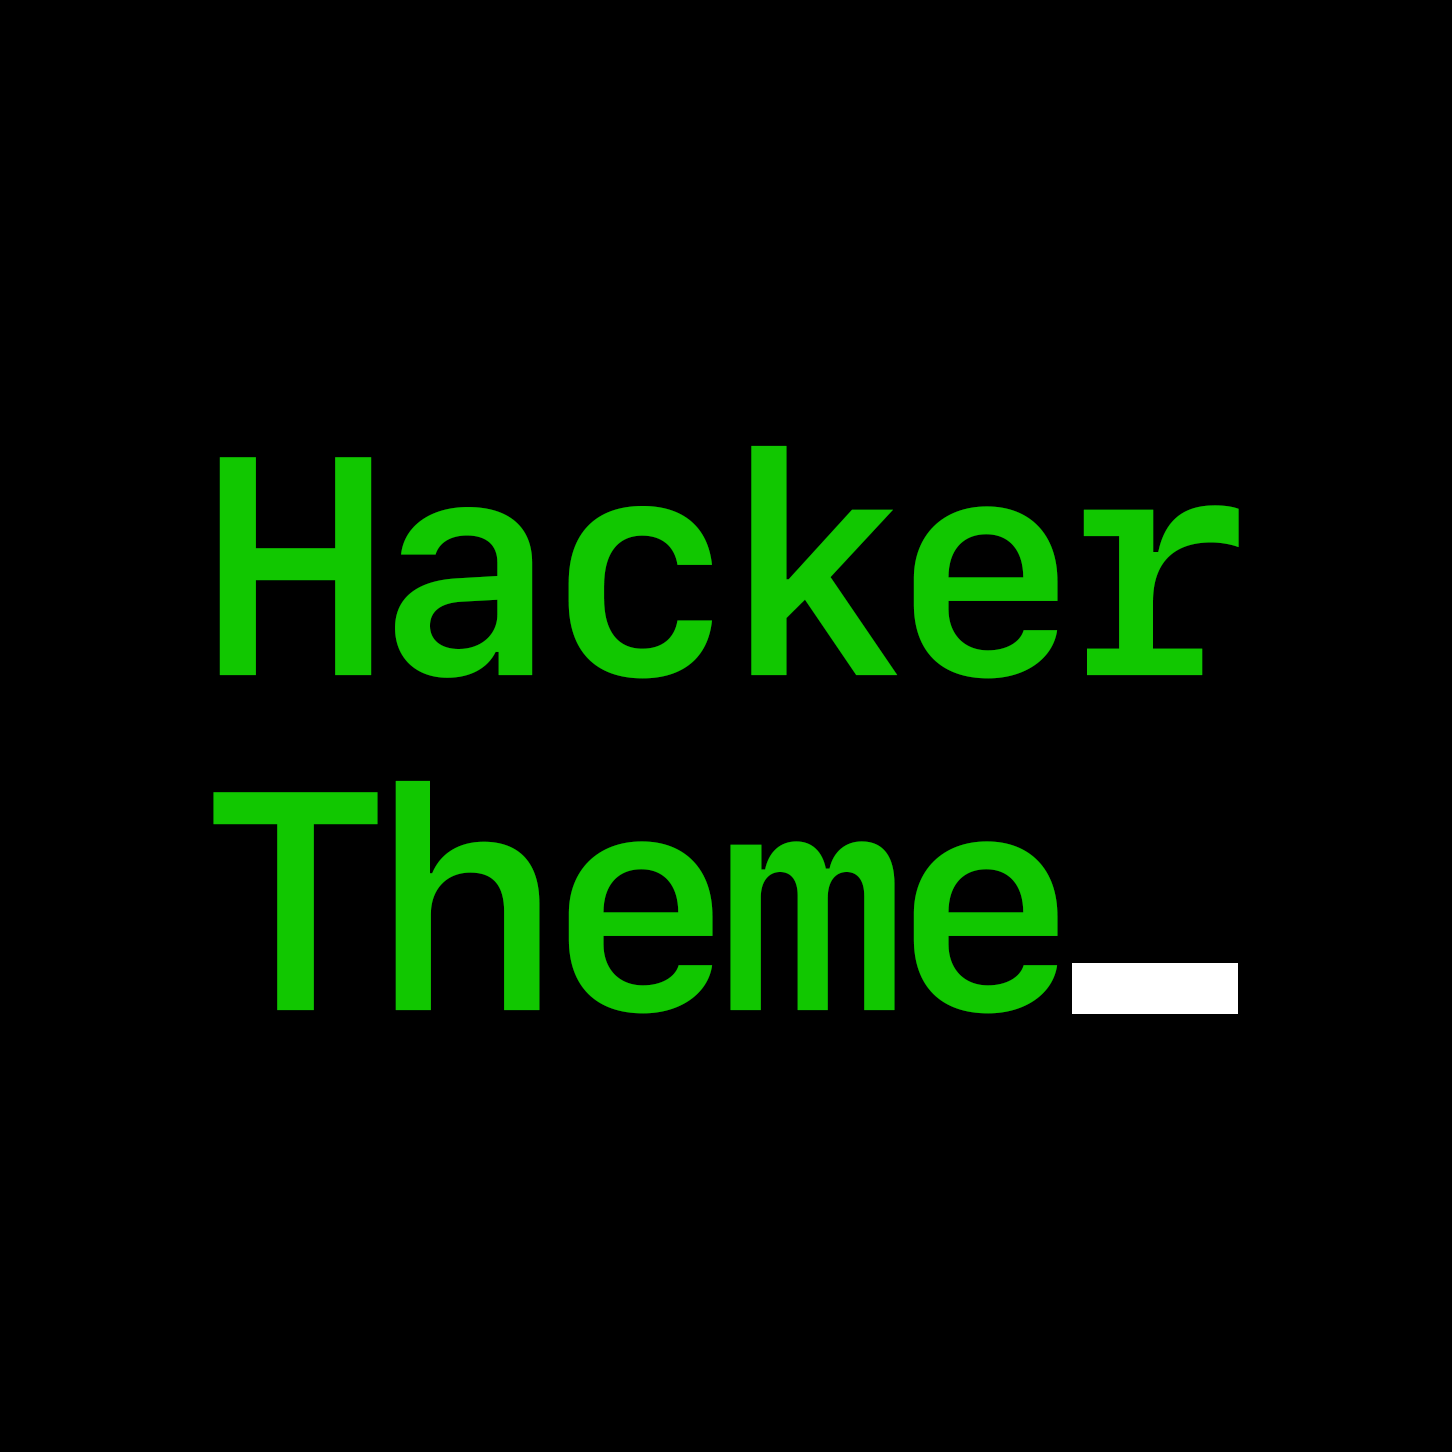 Pro hacker theme